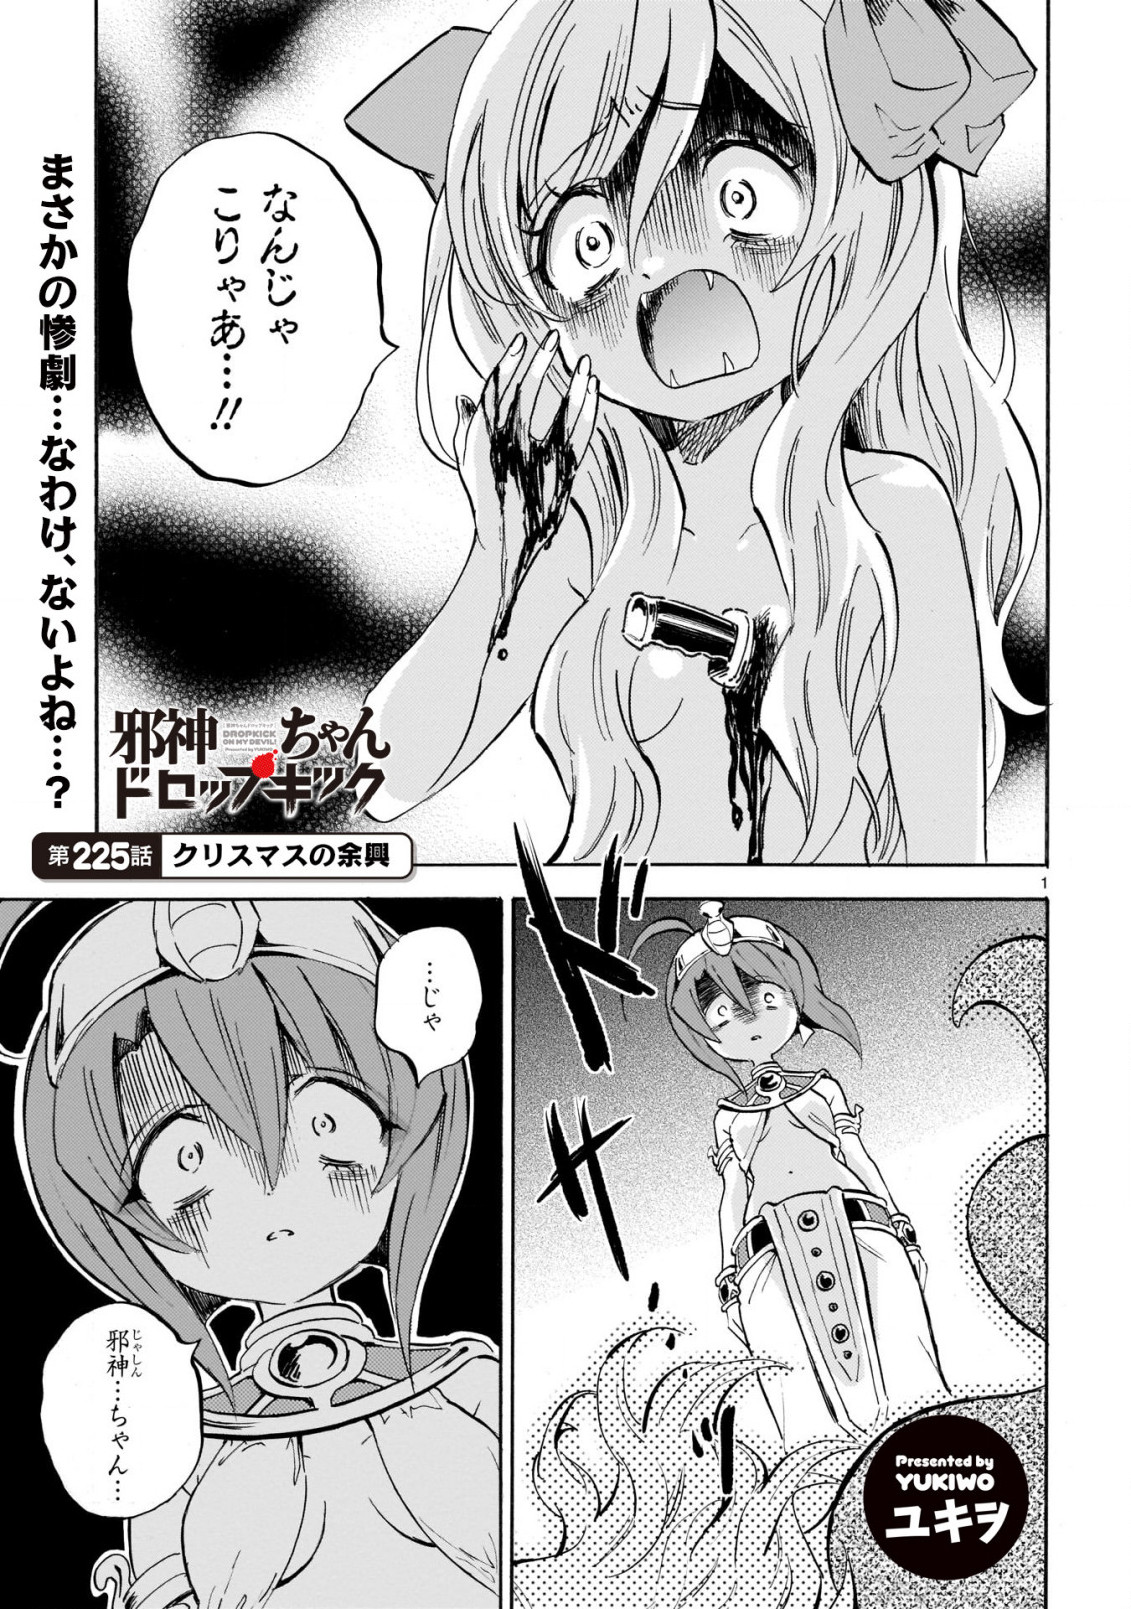 Jashin-chan Dropkick - Chapter 225 - Page 2